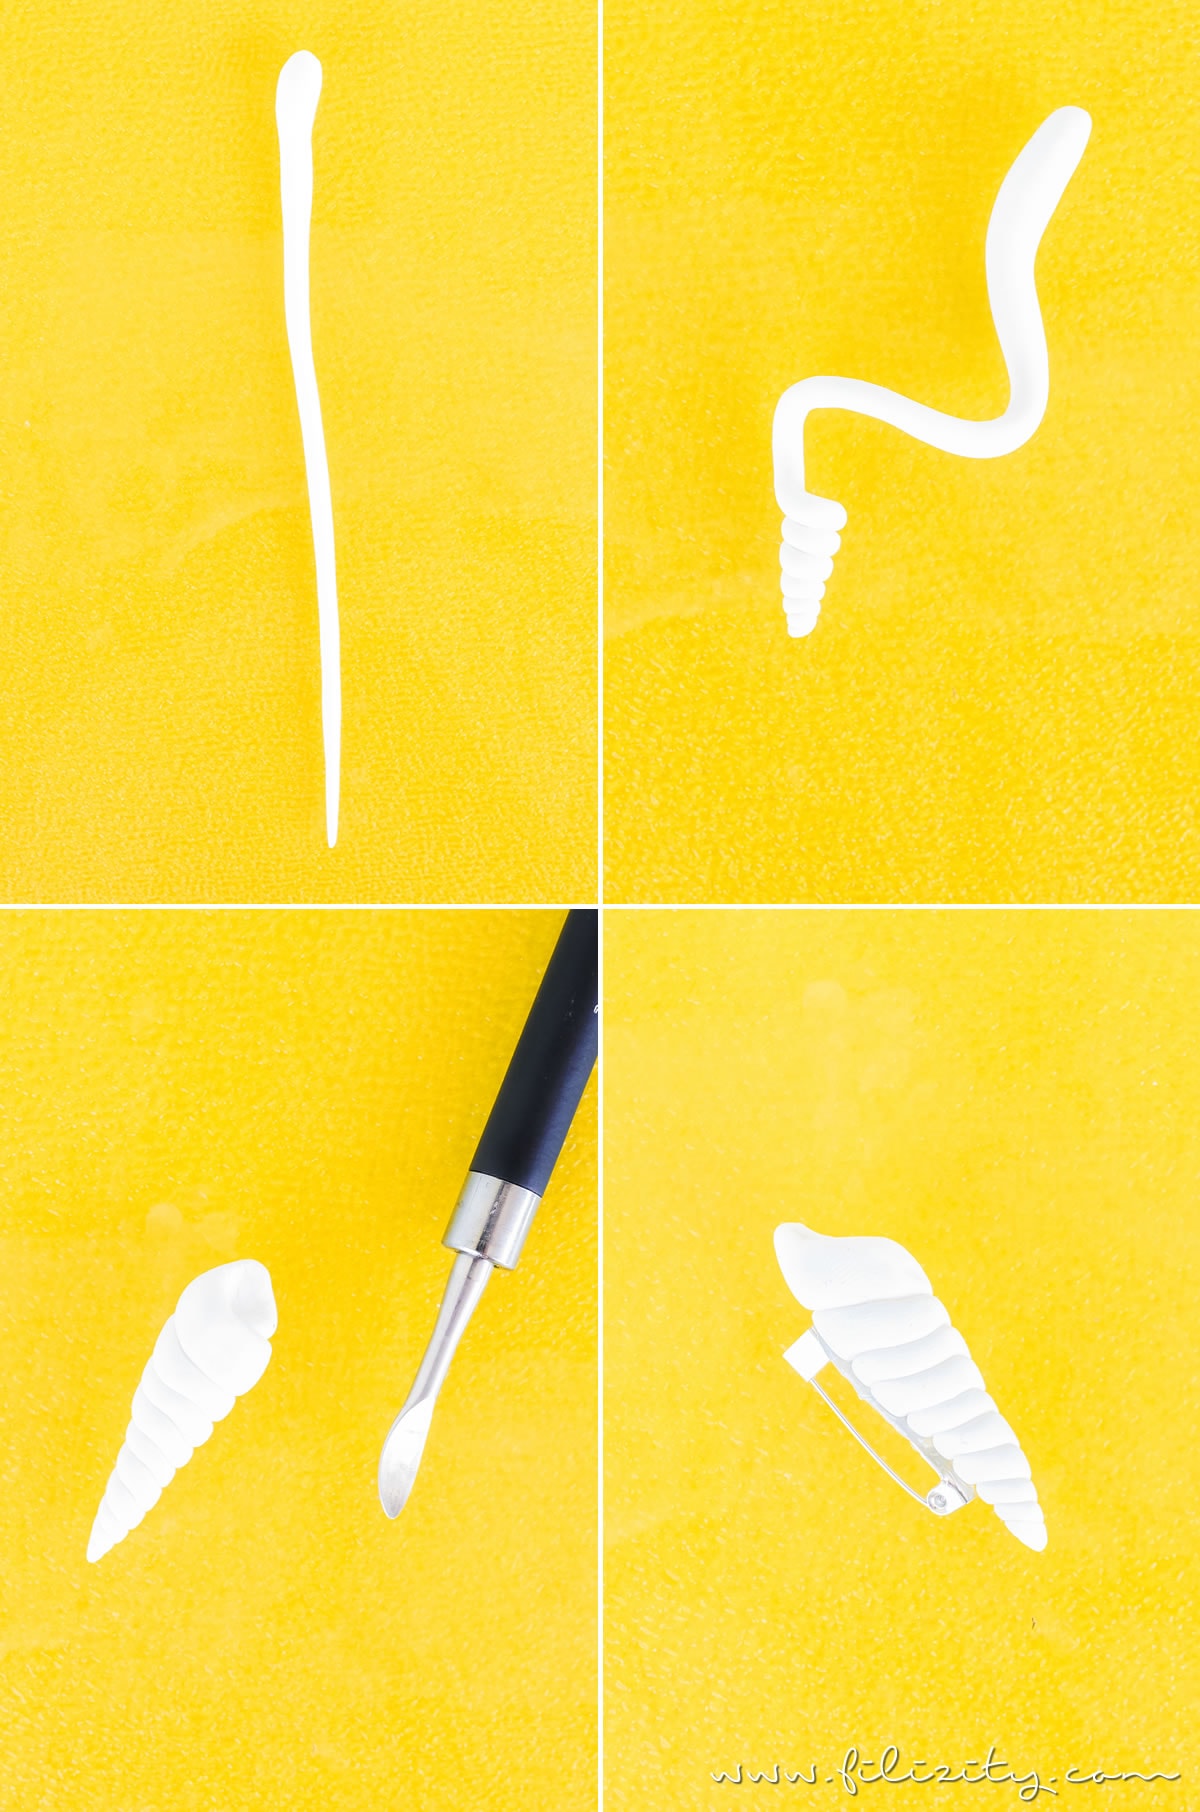 DIY Muschel-Brosche aus Fimo oder Kaltporzellan selber machen | Sommer-Schmuck basteln | Filizity.com - DIY-Blog aus dem Rheinland #myfimo #fimo #kaltporzellan #sommer